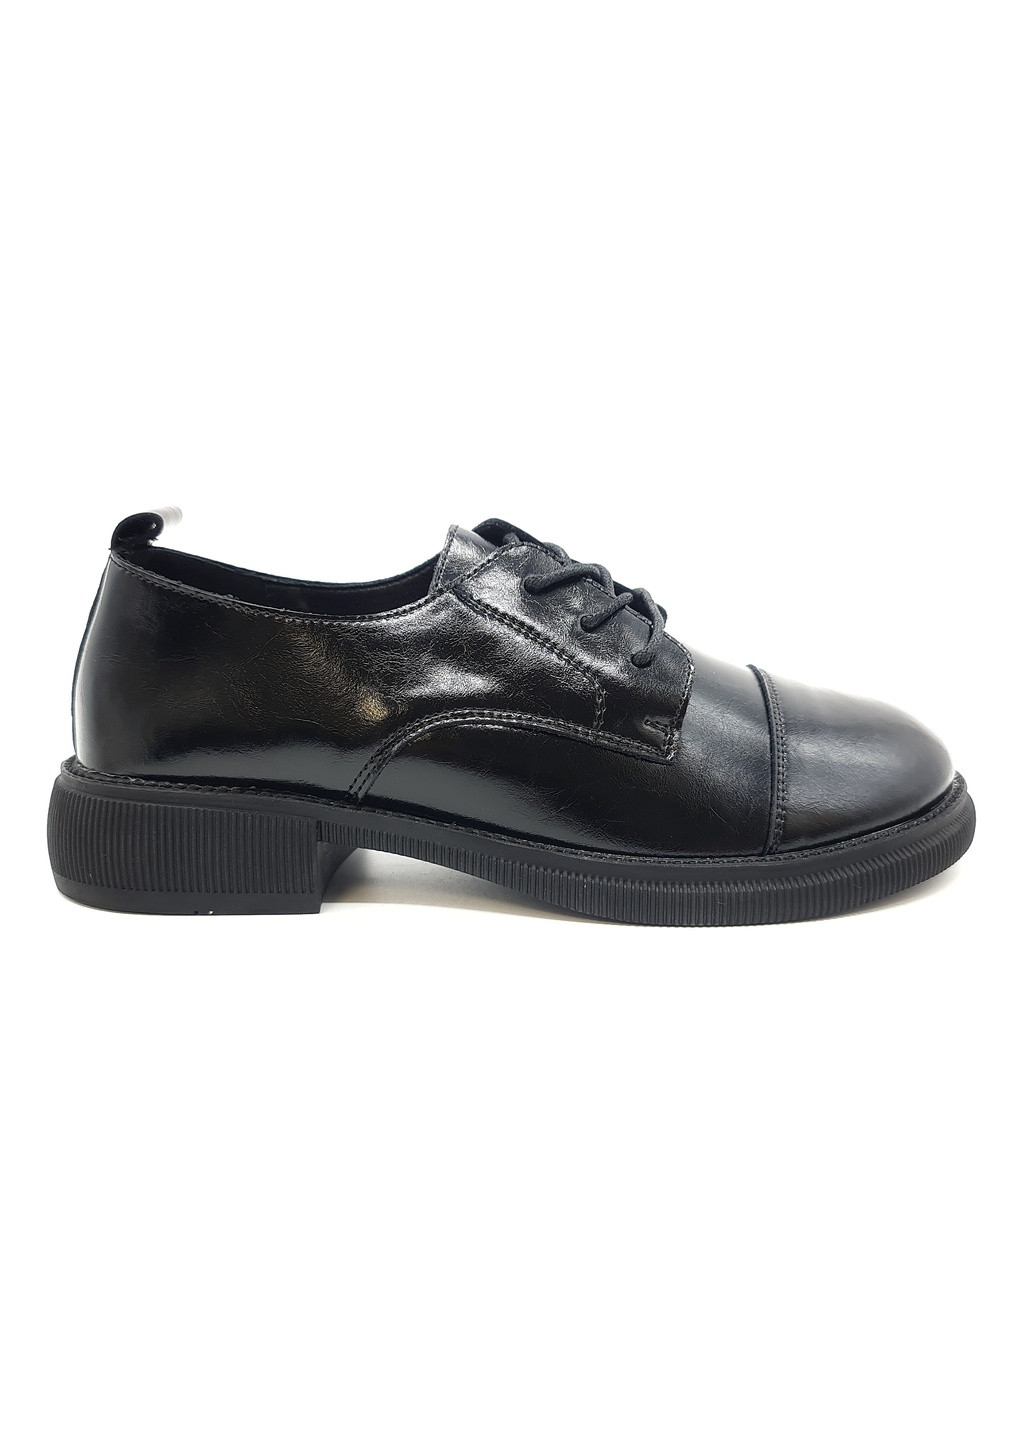 Жіночі туфлі чорні шкіряні YA-16-1 23,5 см (р) Yalasou (259299686)